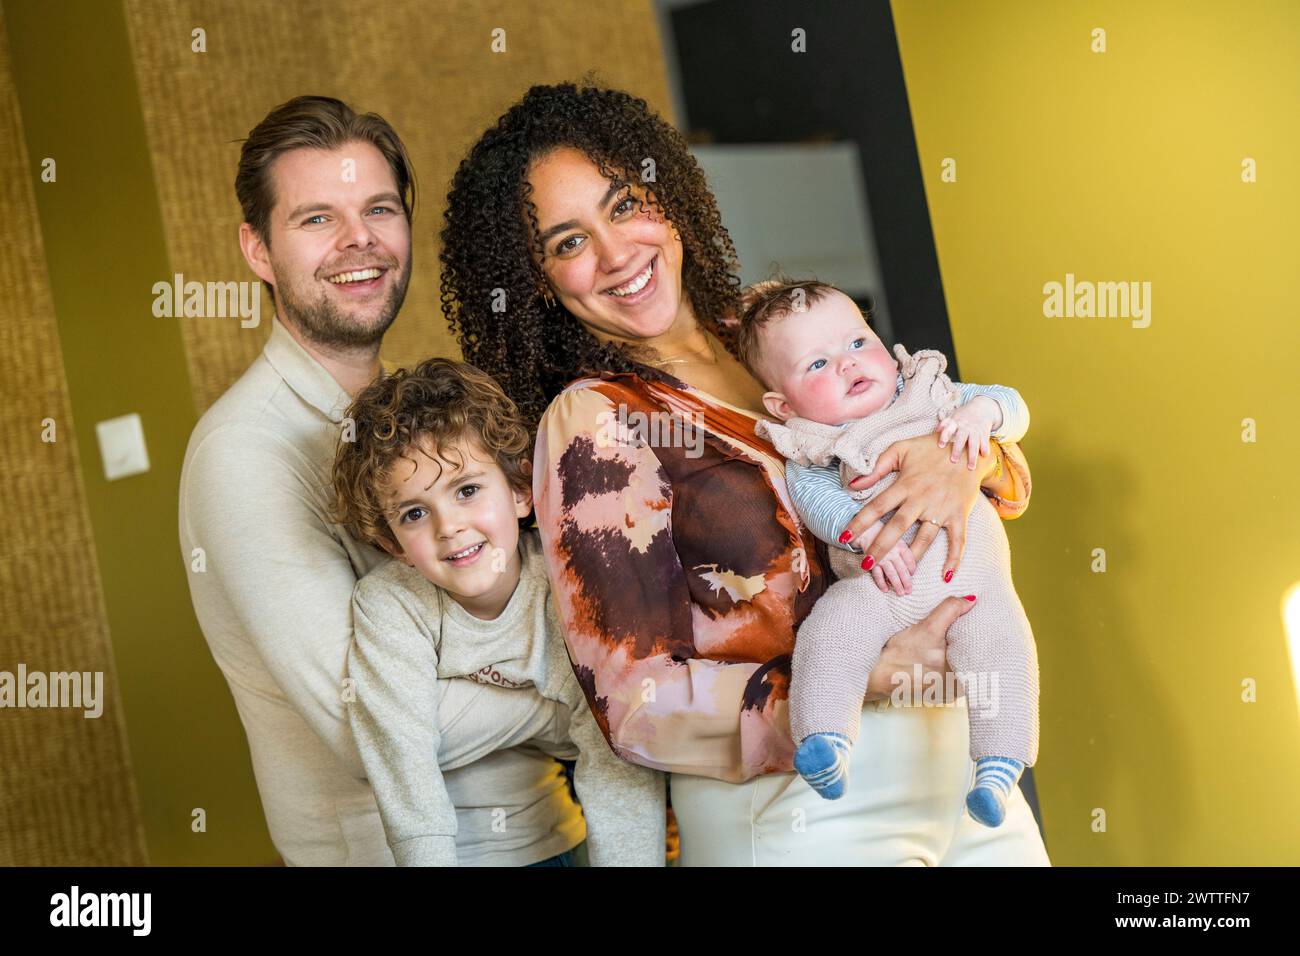 Eine glückliche Familie, die zu Hause einen fröhlichen Moment miteinander teilt. Stockfoto